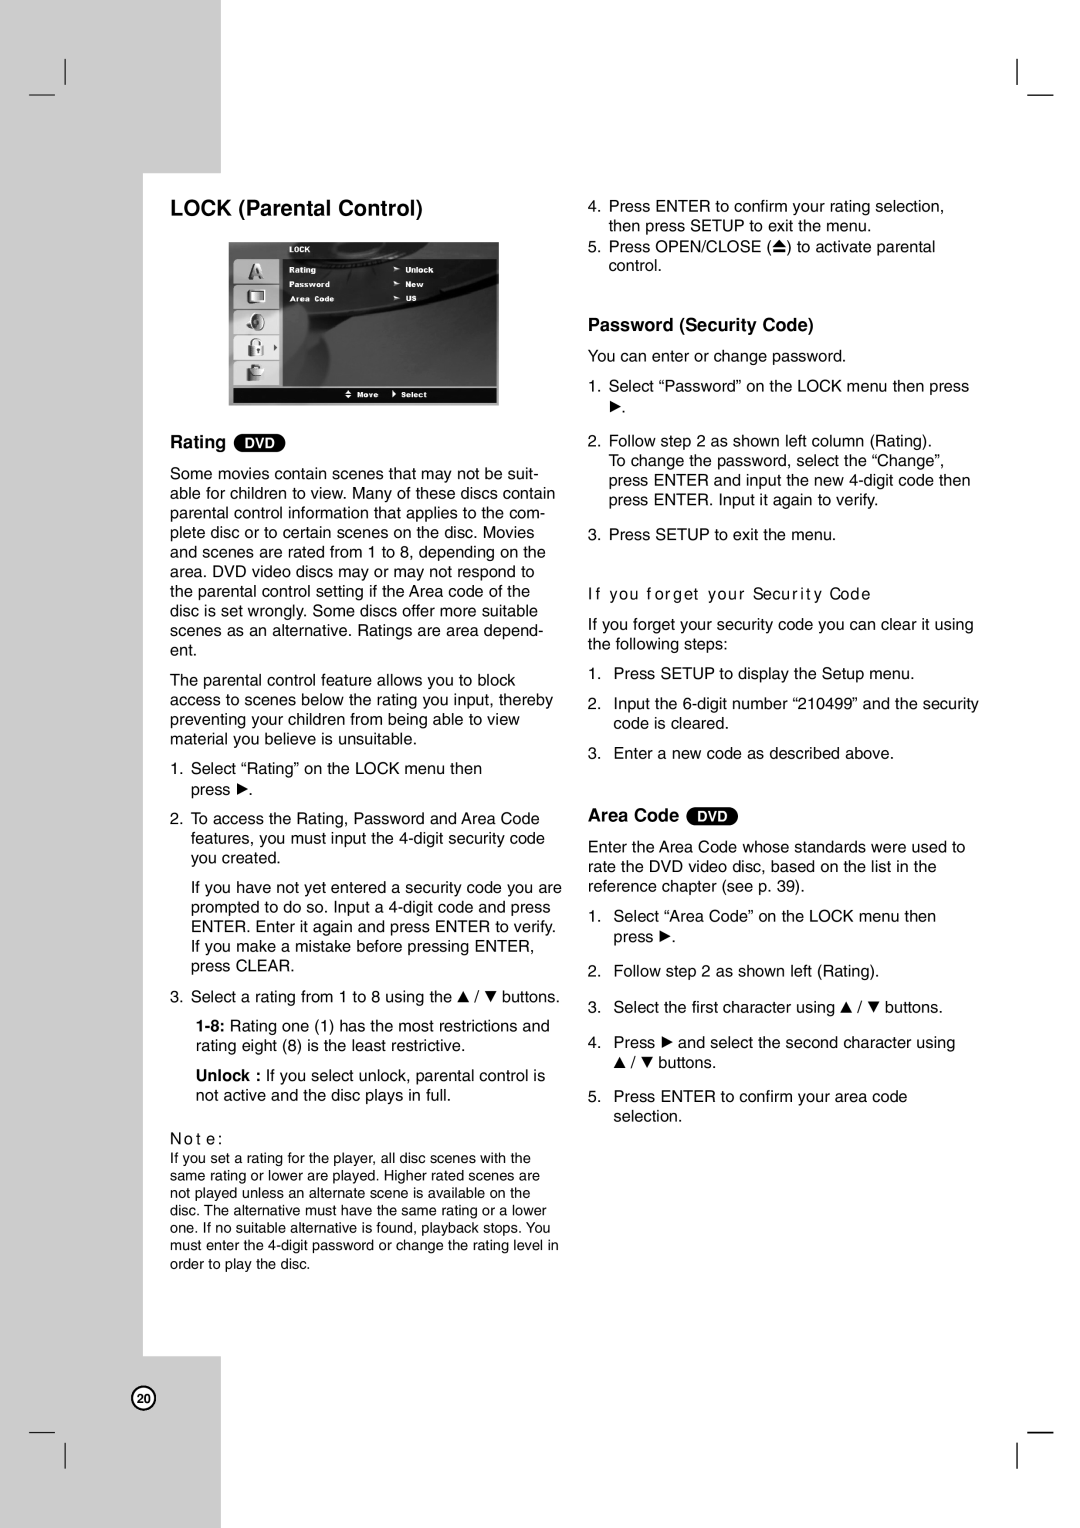 LG Electronics LDX-514 owner manual LOCK Parental Control, Rating DVD, Password Security Code, Area Code DVD 